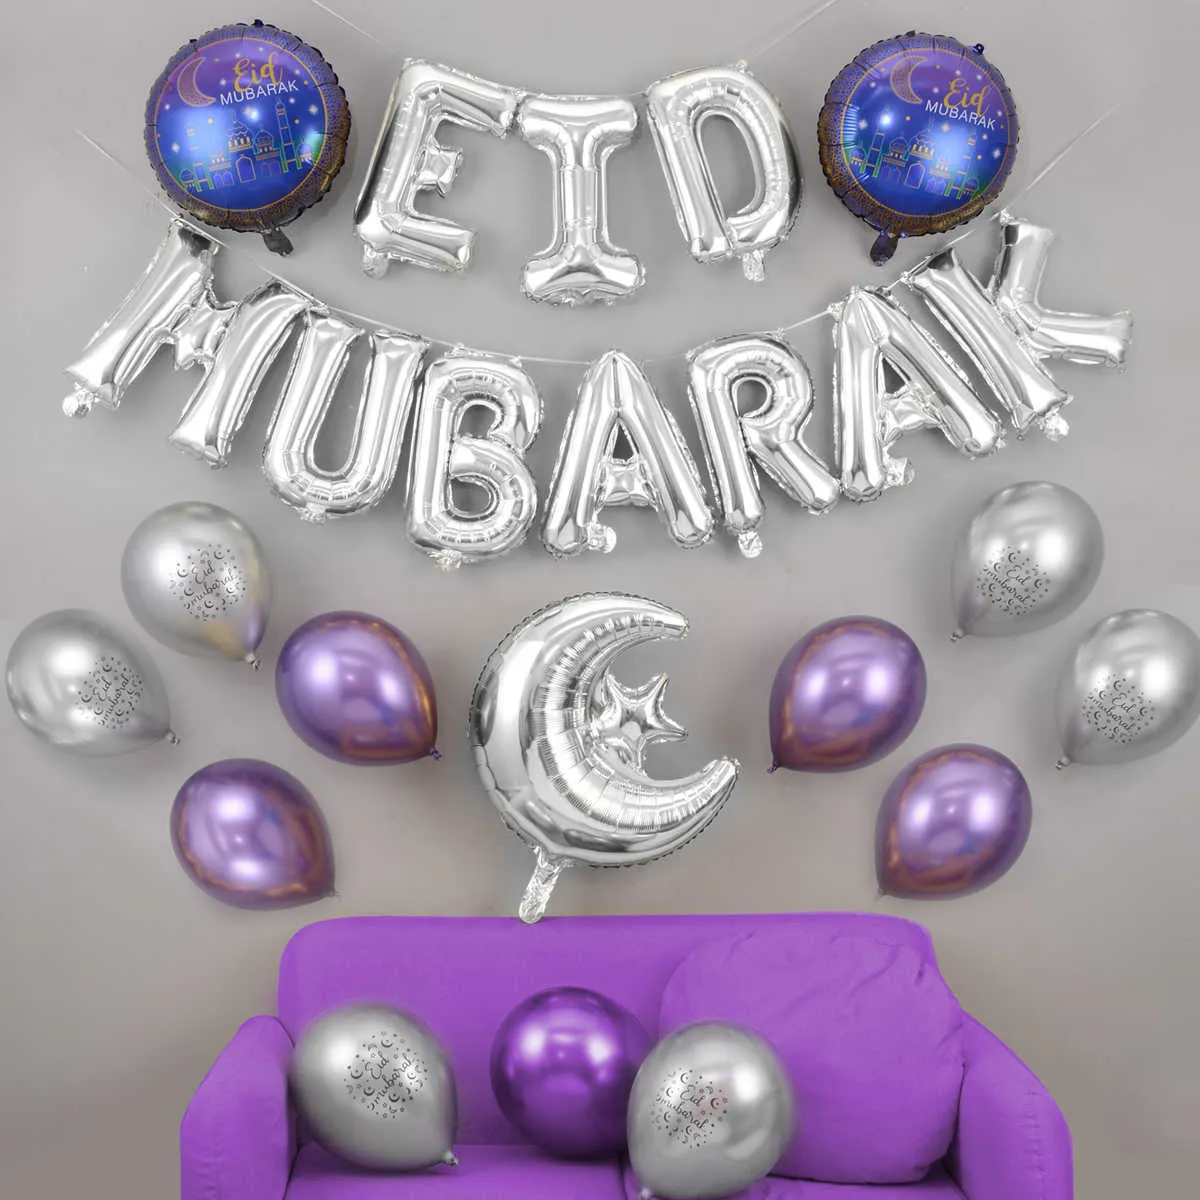 27 teile/satz Eid Mubarak Ballons Helium Latex Ballon Anniversaire Party Dekoration Globo Aid Mubarak Dekoration 210925